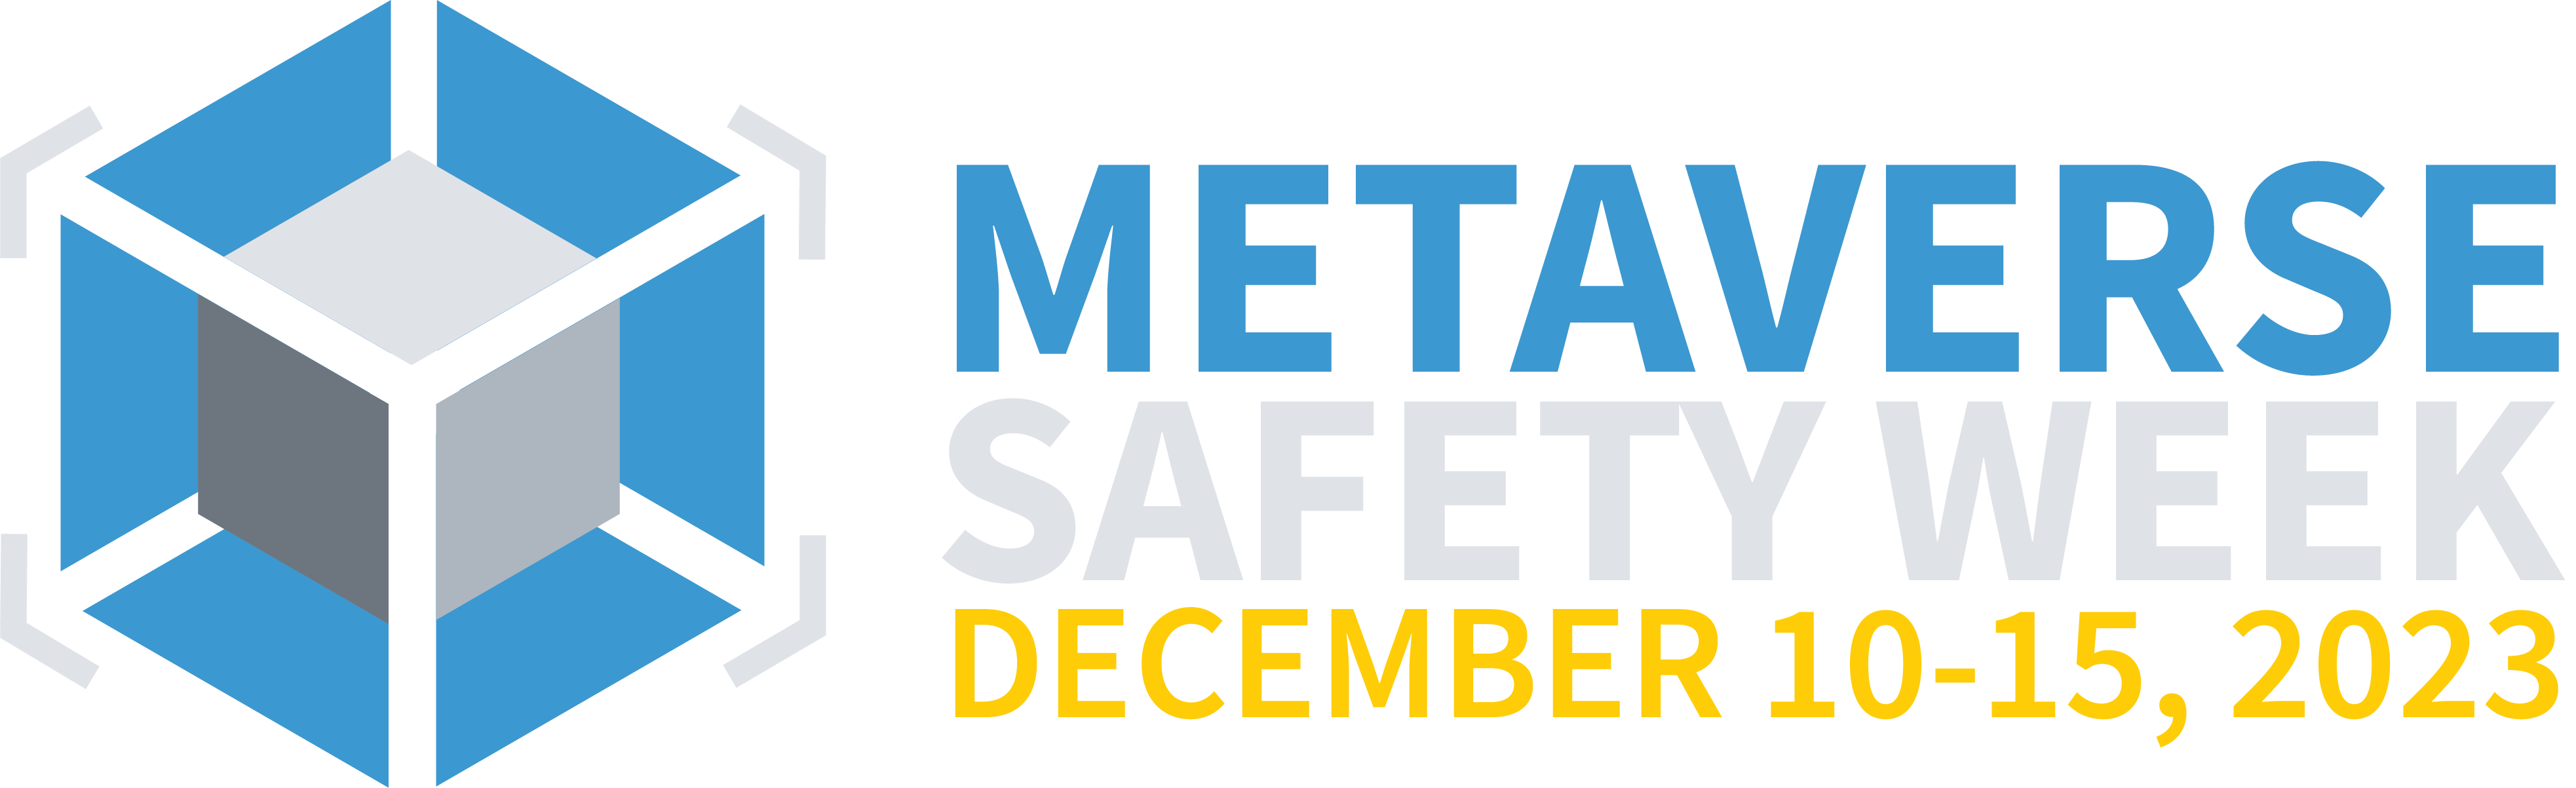 Metaverse Safety Week